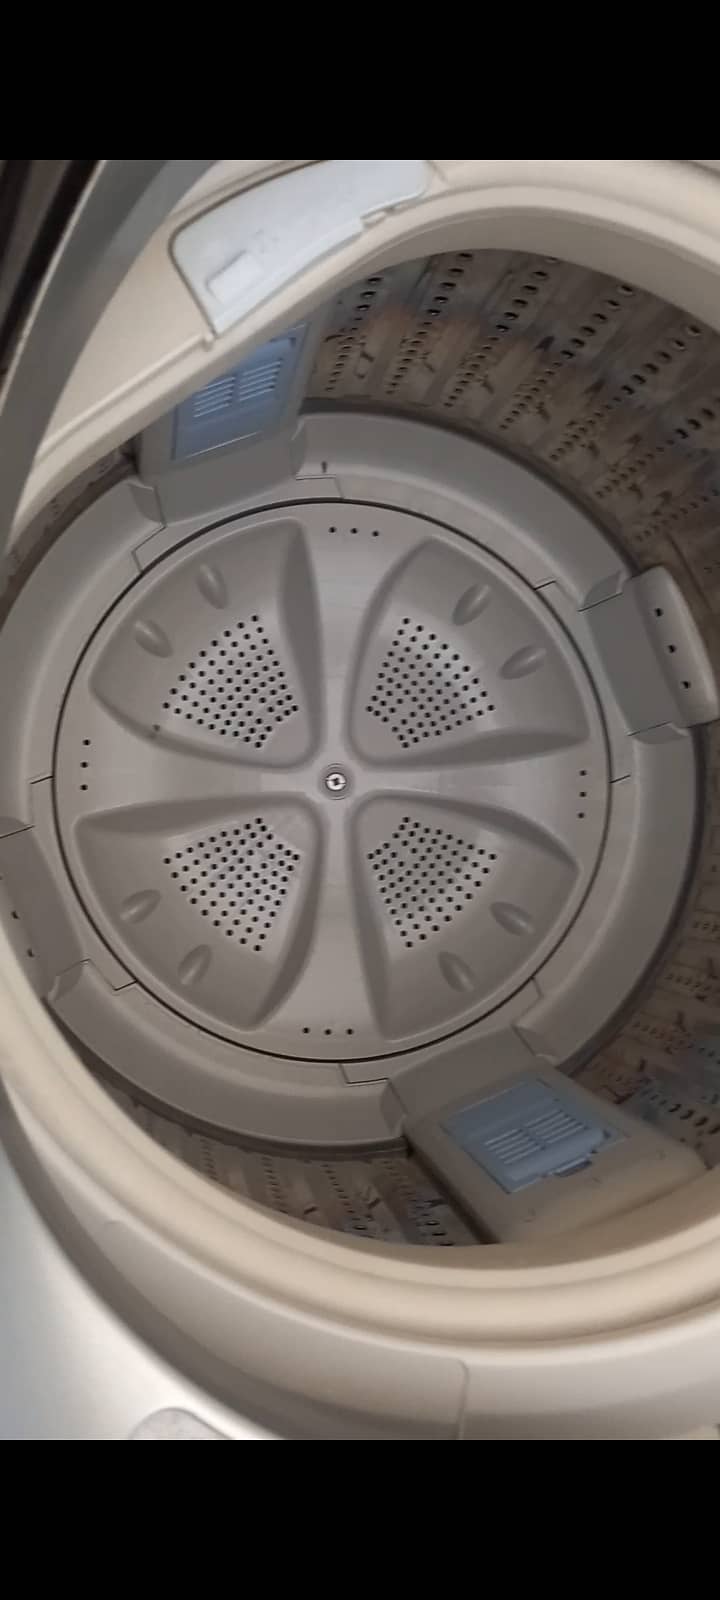 Full automatic washing machine 3